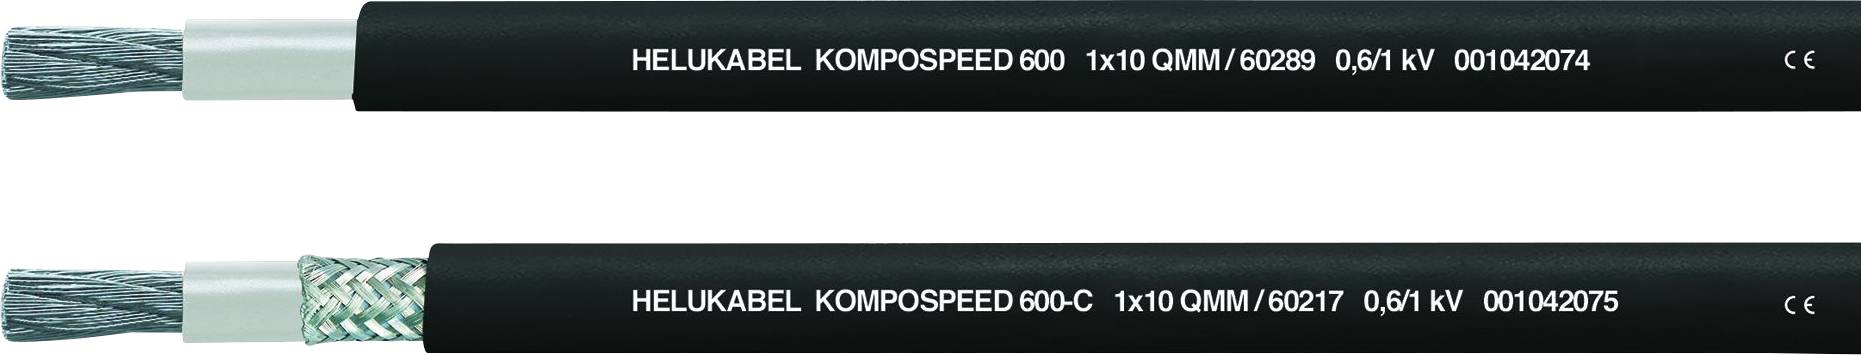 HELUKABEL 60291-500 Schleppkettenleitung KOMPOSPEED 600 1 x 25.00 mm² Schwarz 500 m